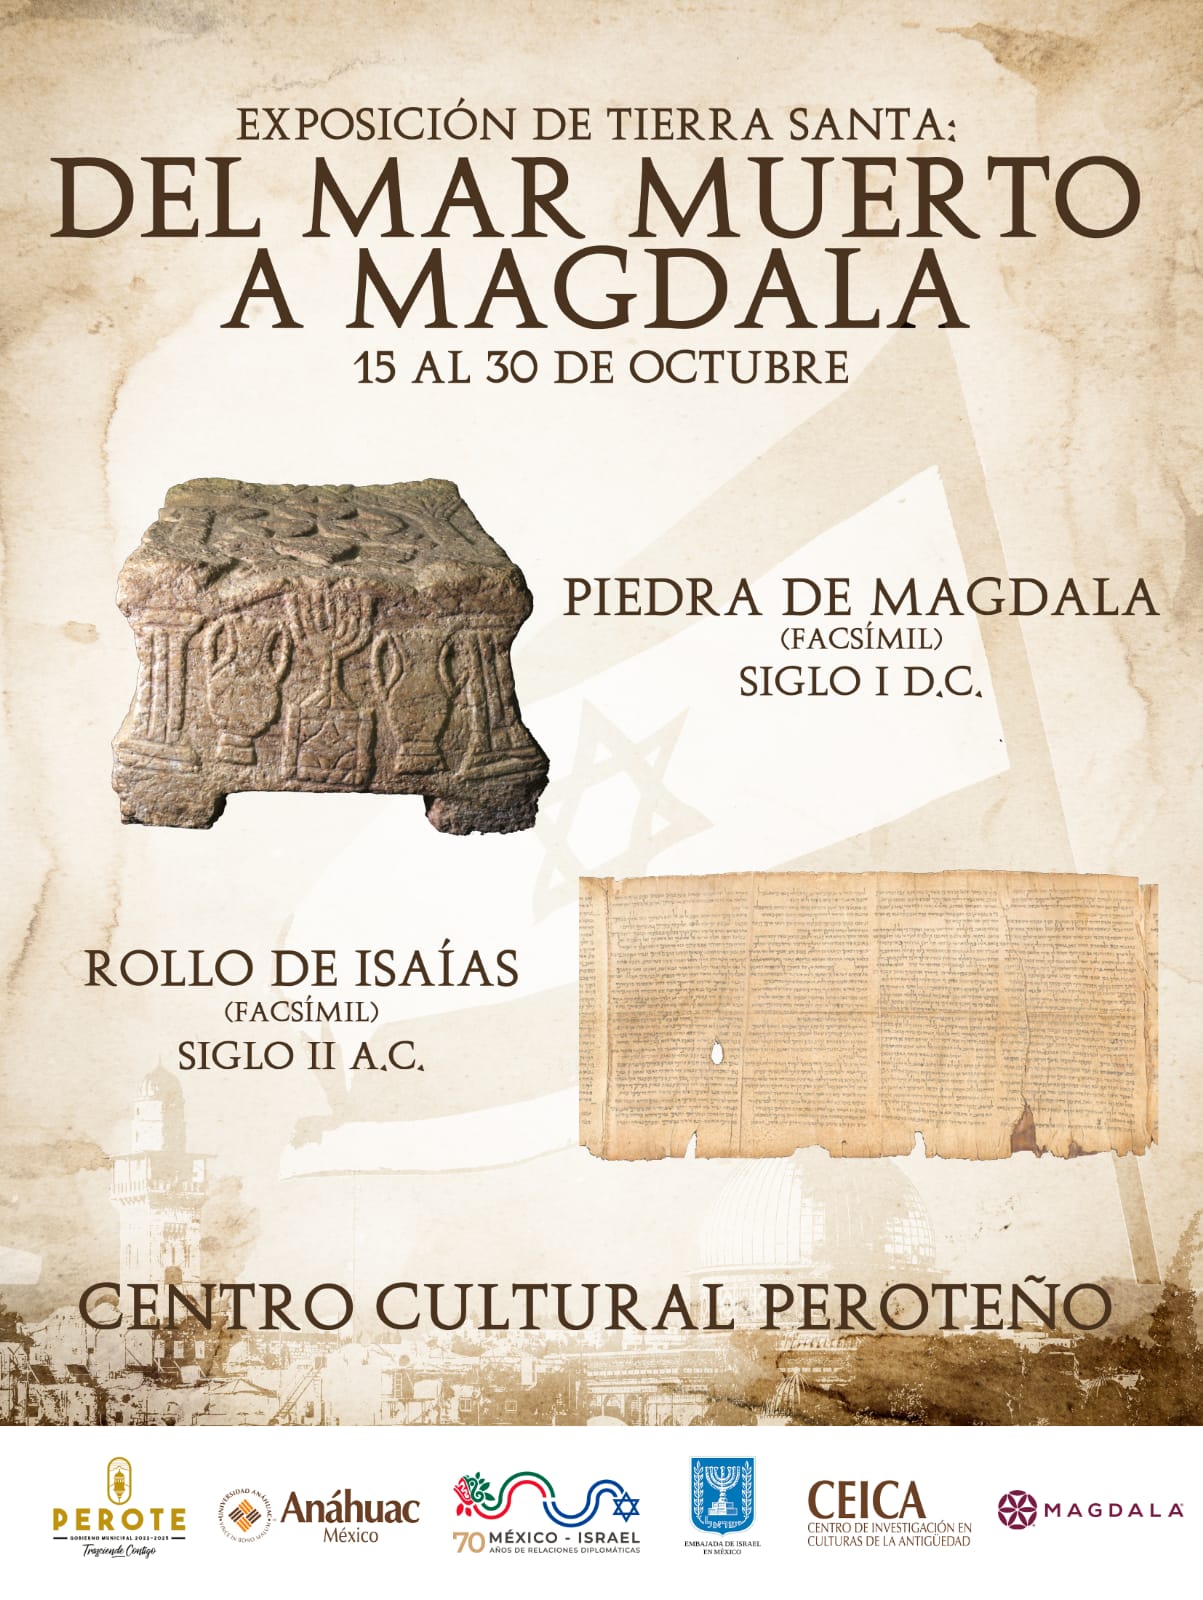 La exposición “Tierra Santa: del Mar Muerto a Magdala” se exhibirá en Perote, Veracruz